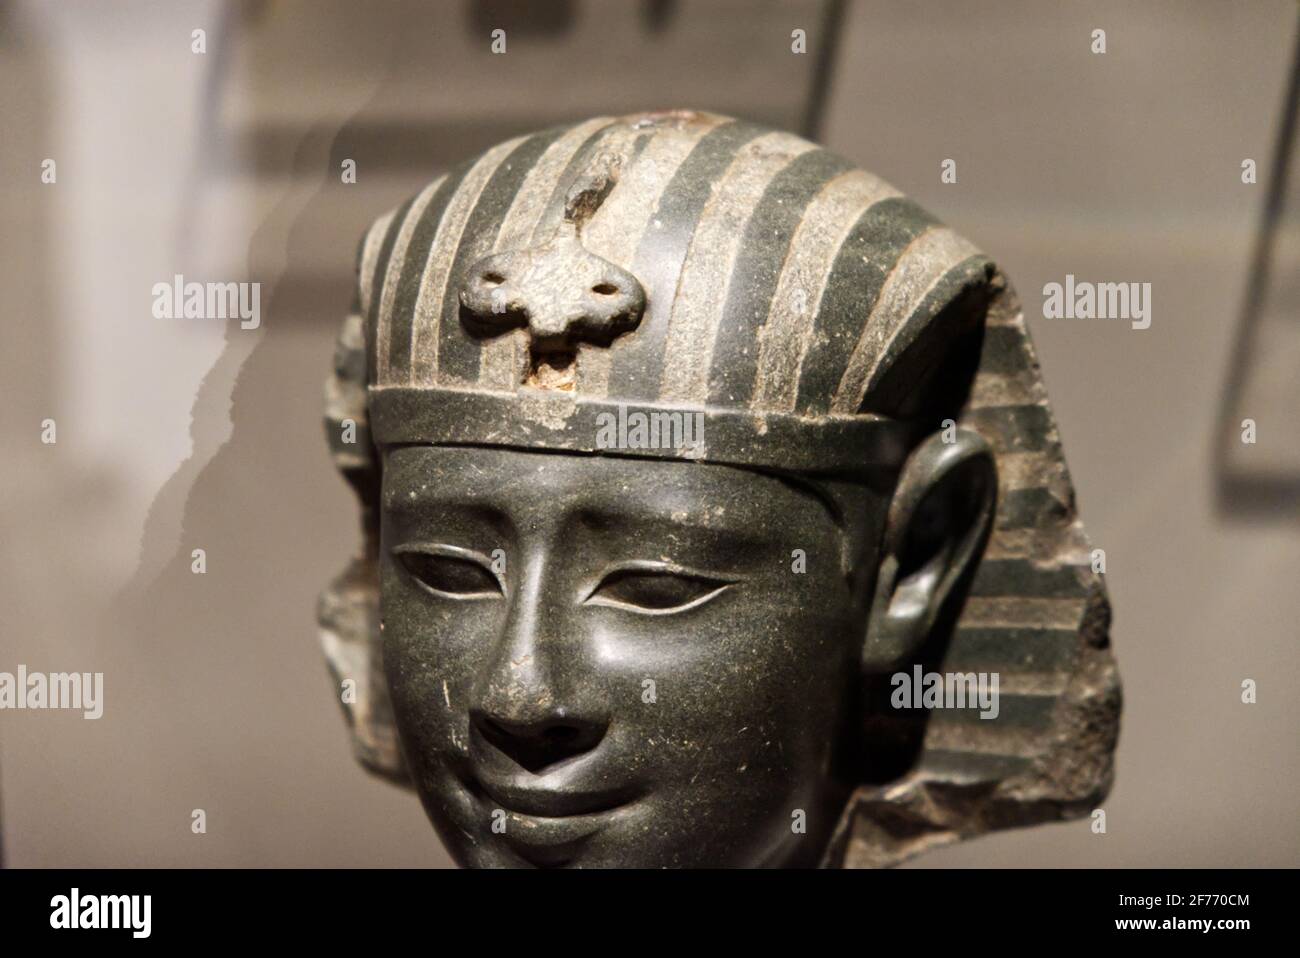 Ägyptisches Museum von Turin, Italien - September 2021: Nahaufnahme eines ägyptischen Kopfes, der in schwarzem Diorit fein geschnitzt ist Stockfoto